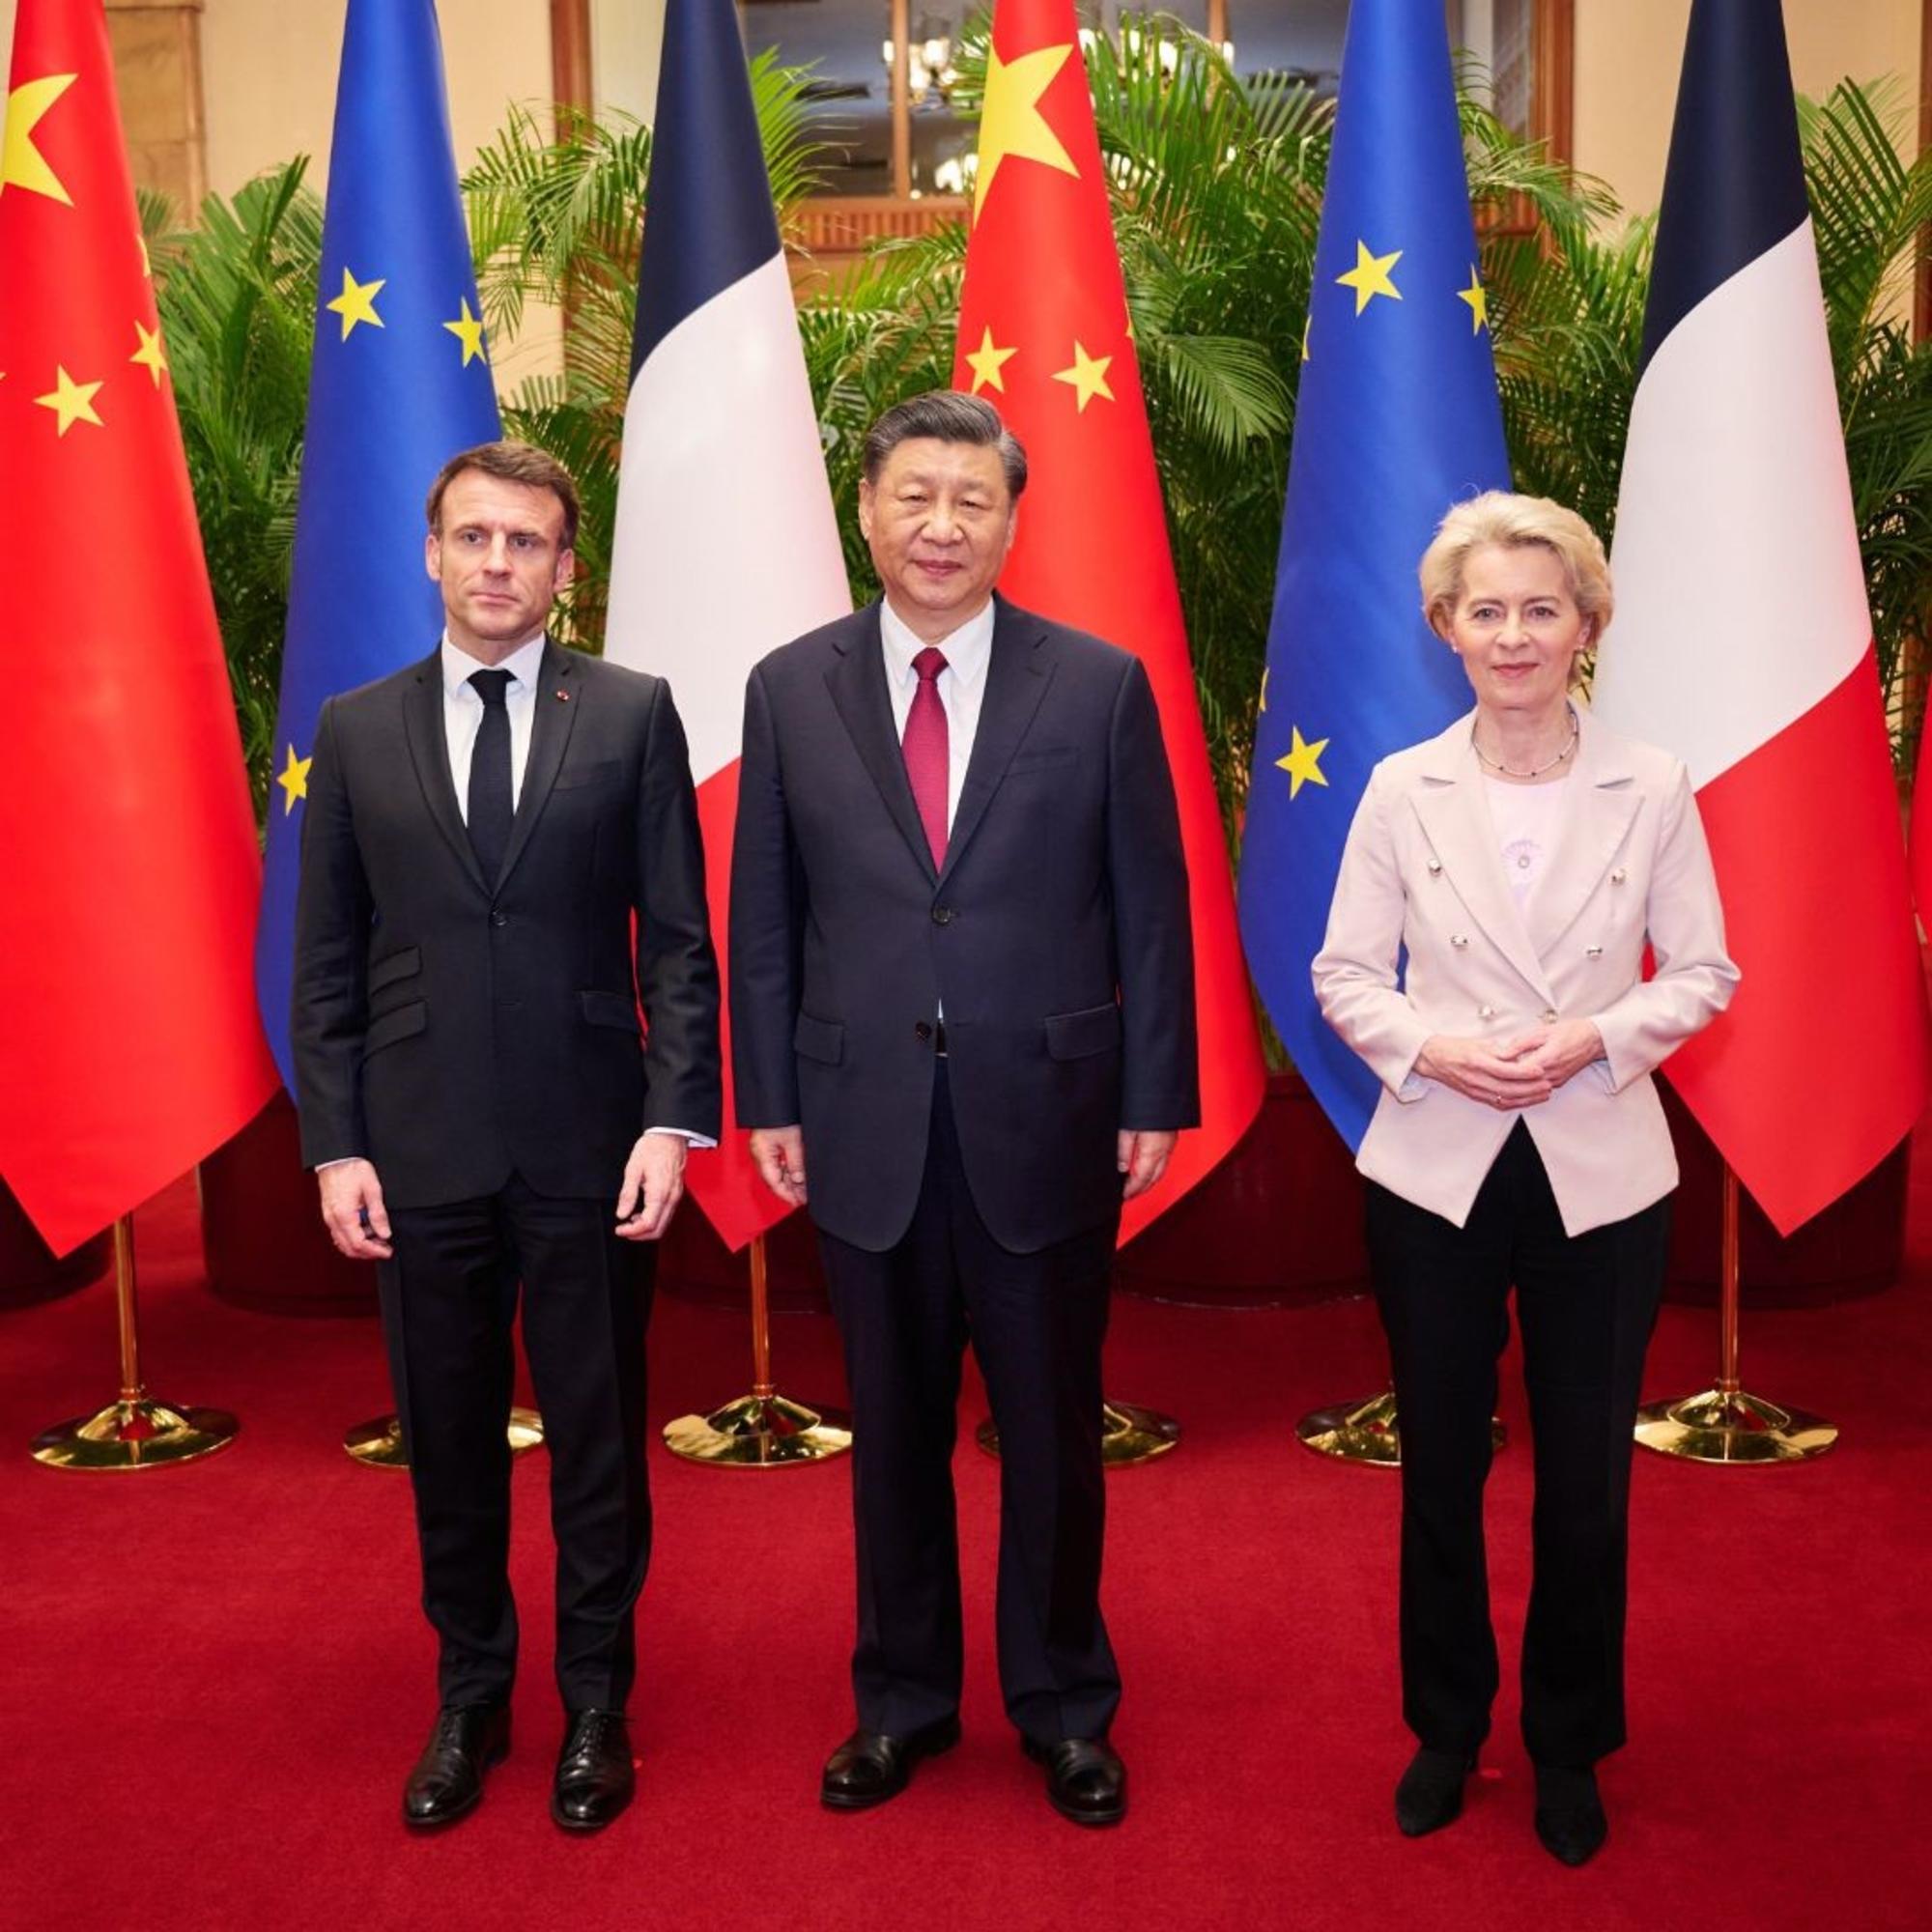 Macron, Xi, von der leyen